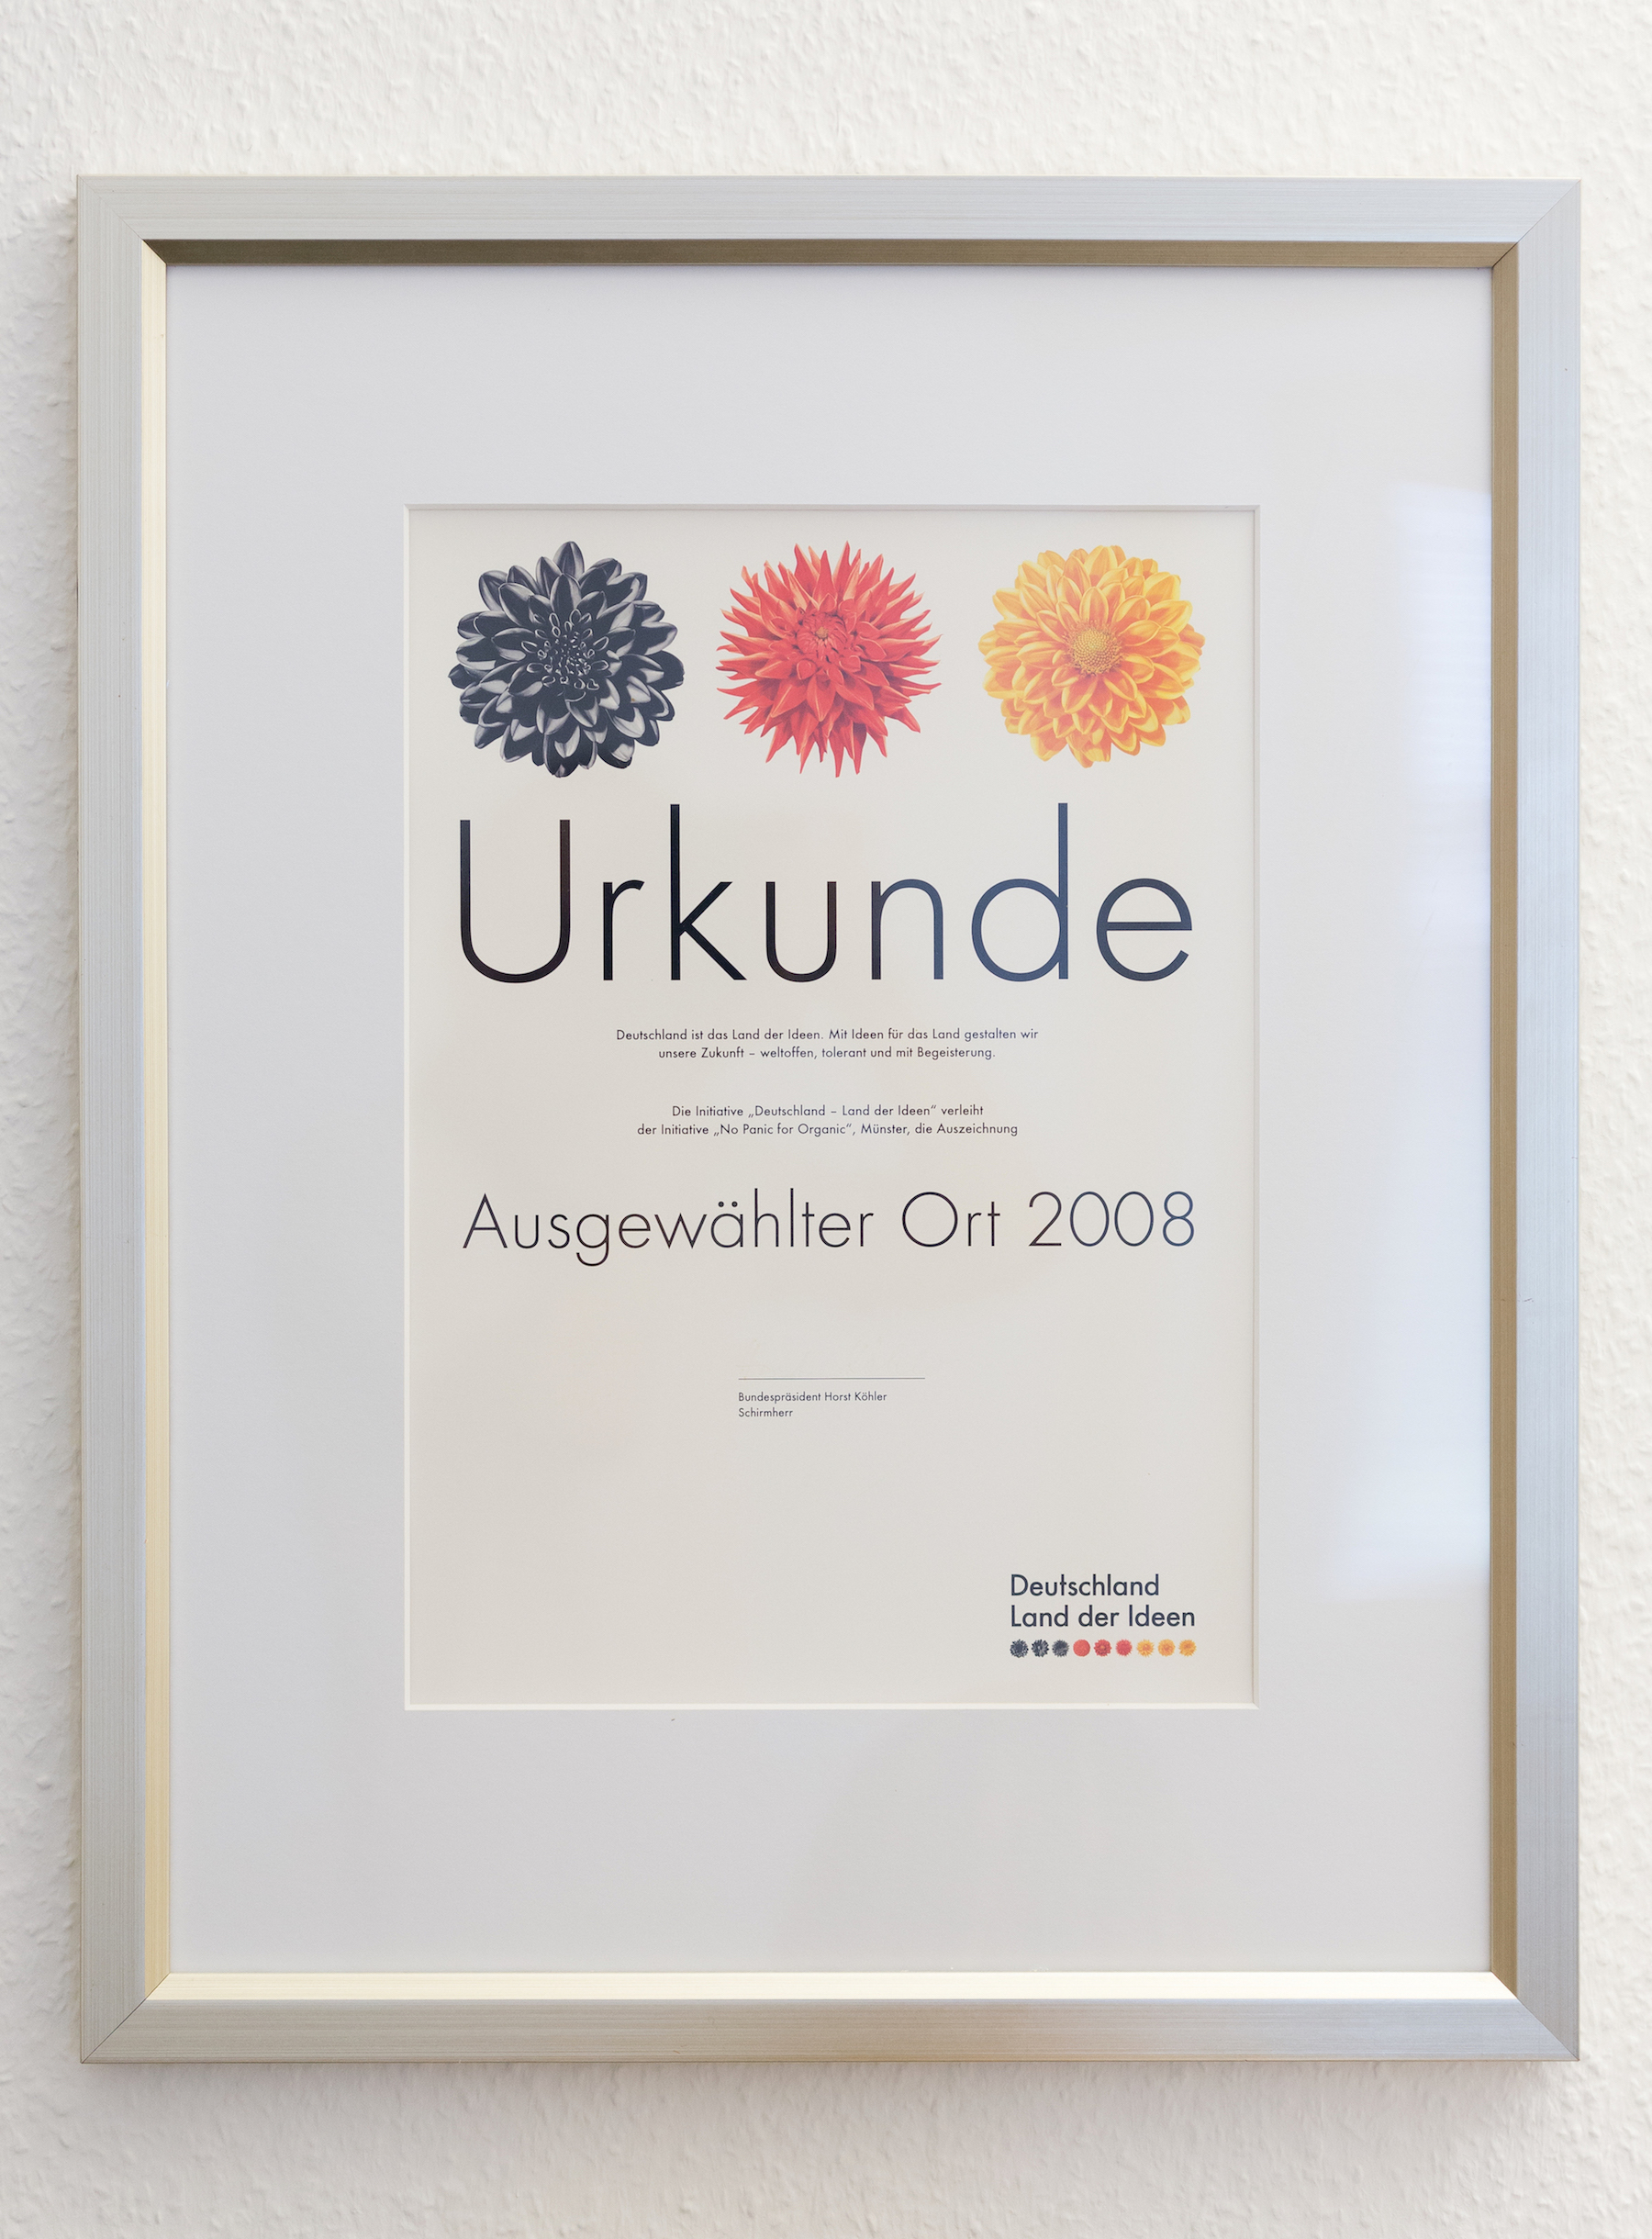 Die Initiative „No Panic for Organic“ wurde 2008 vom damaligen Bundespräsidenten Köhler mit dem Titel „Ausgewählter Ort 2008“  ausgezeichnet. 